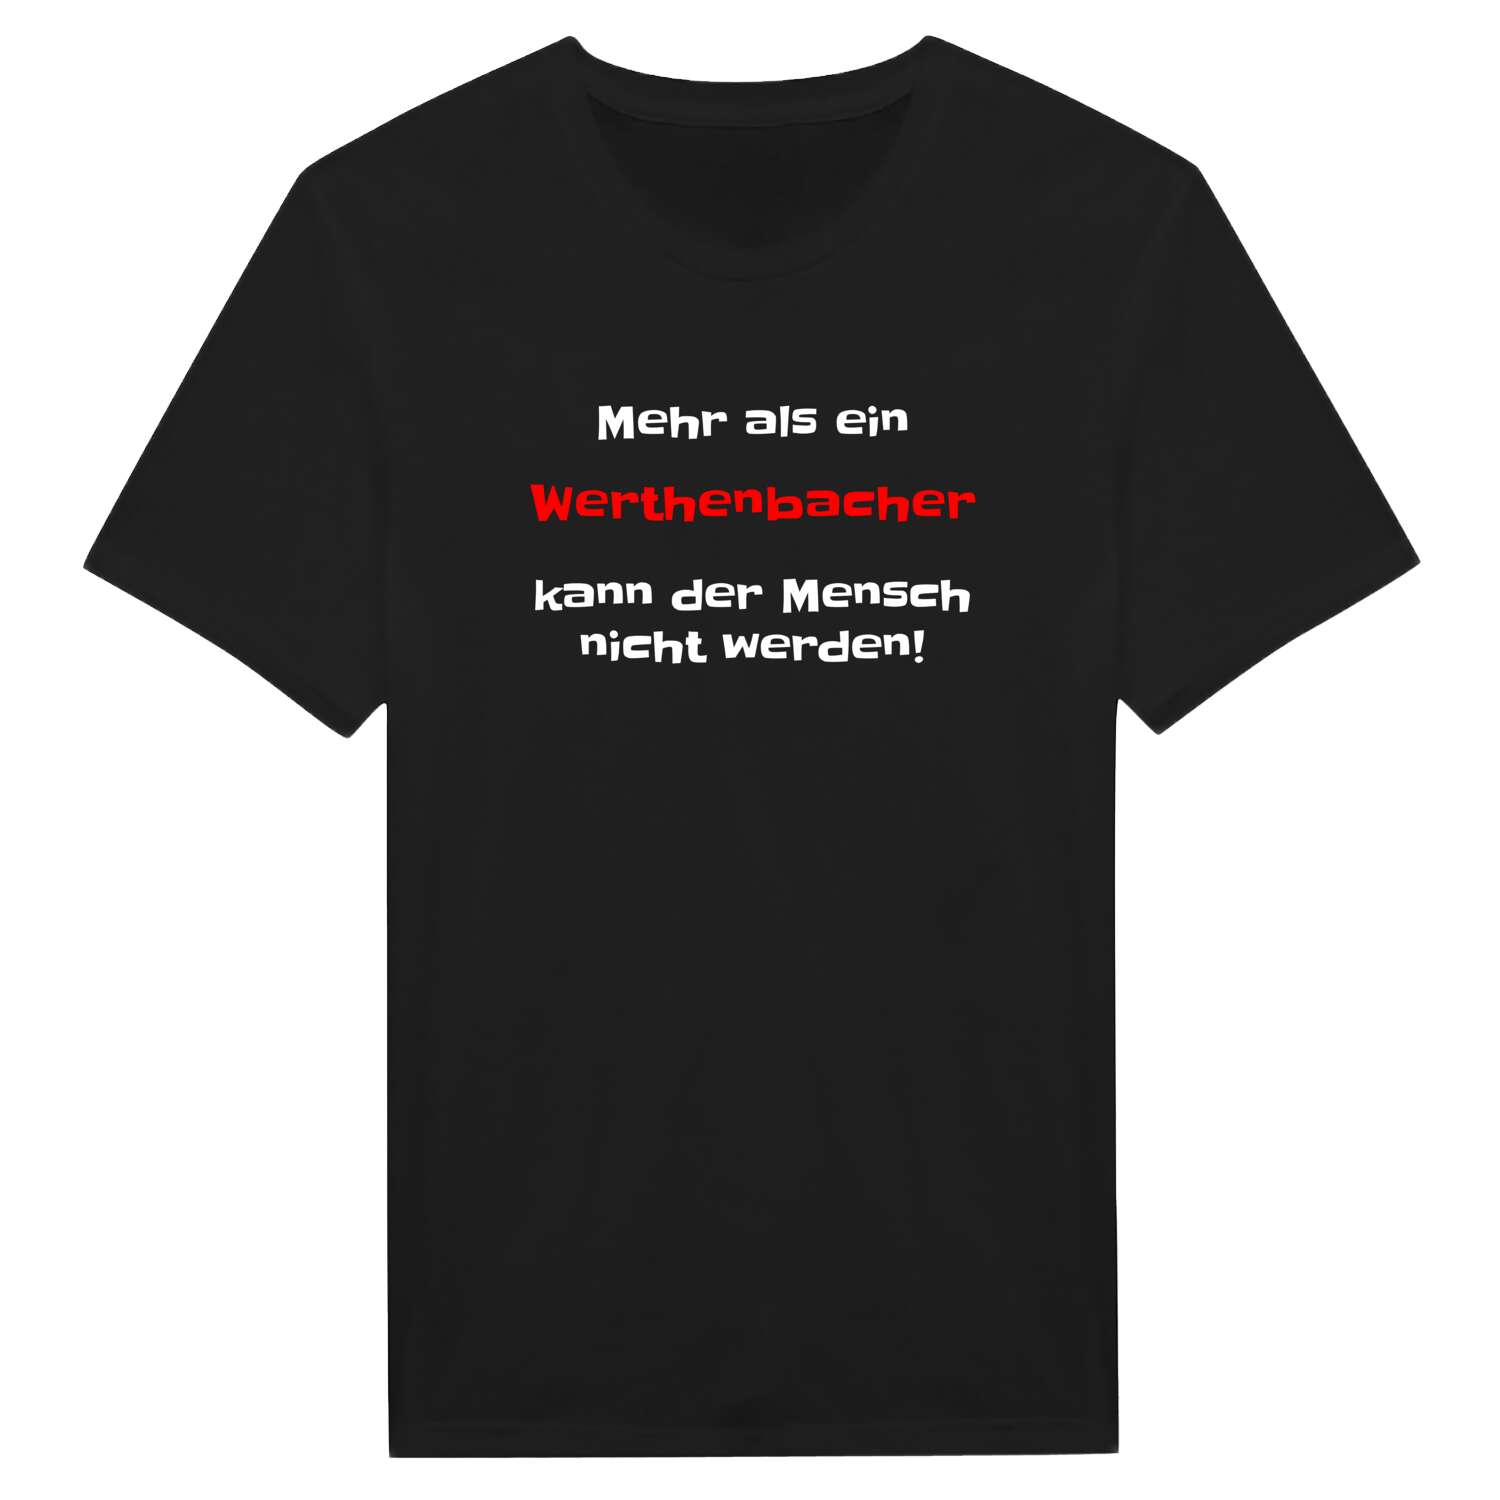 Werthenbach T-Shirt »Mehr als ein«